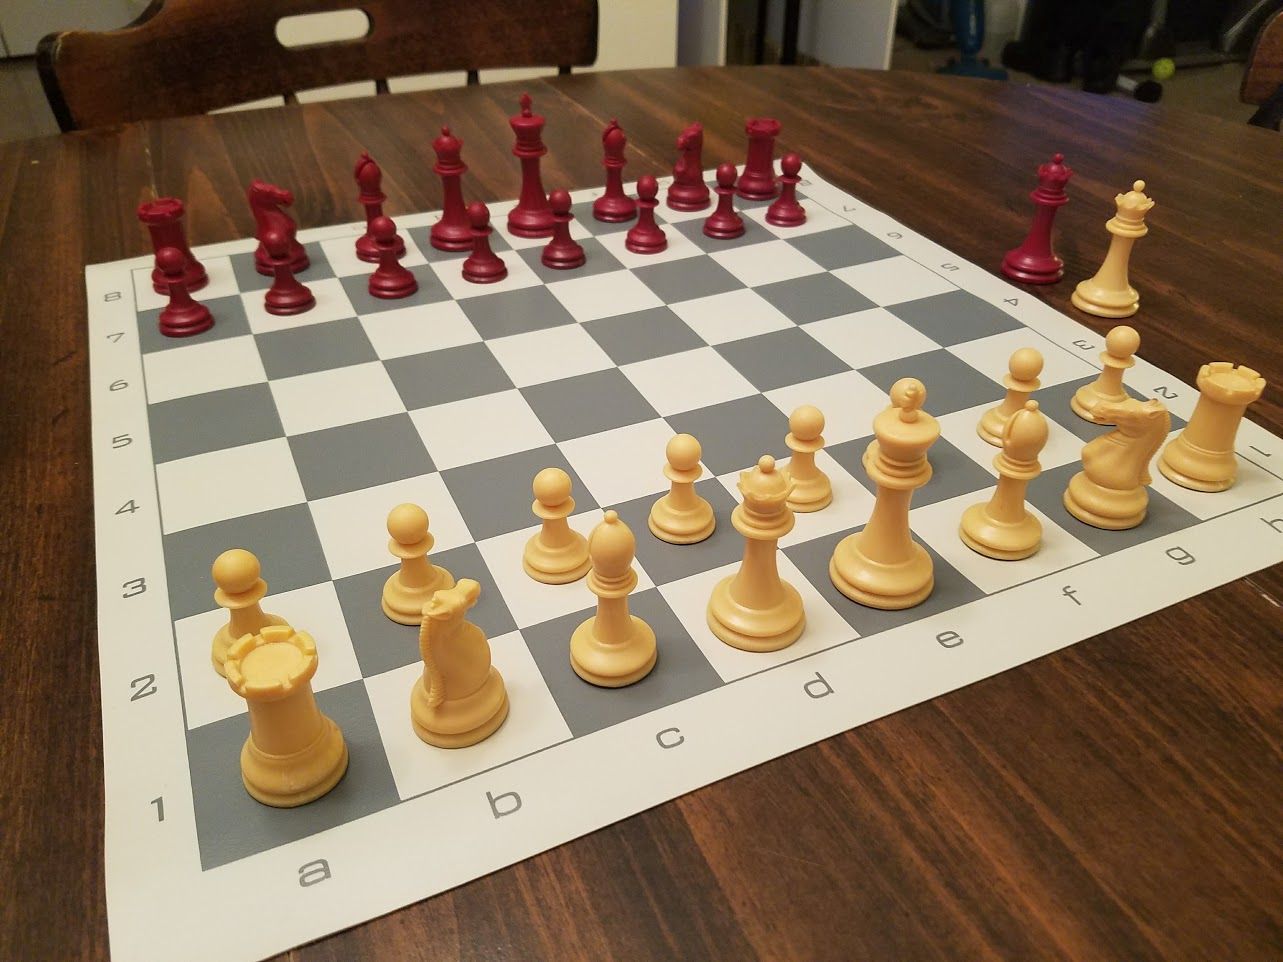 Где стоит король в шахматах фото